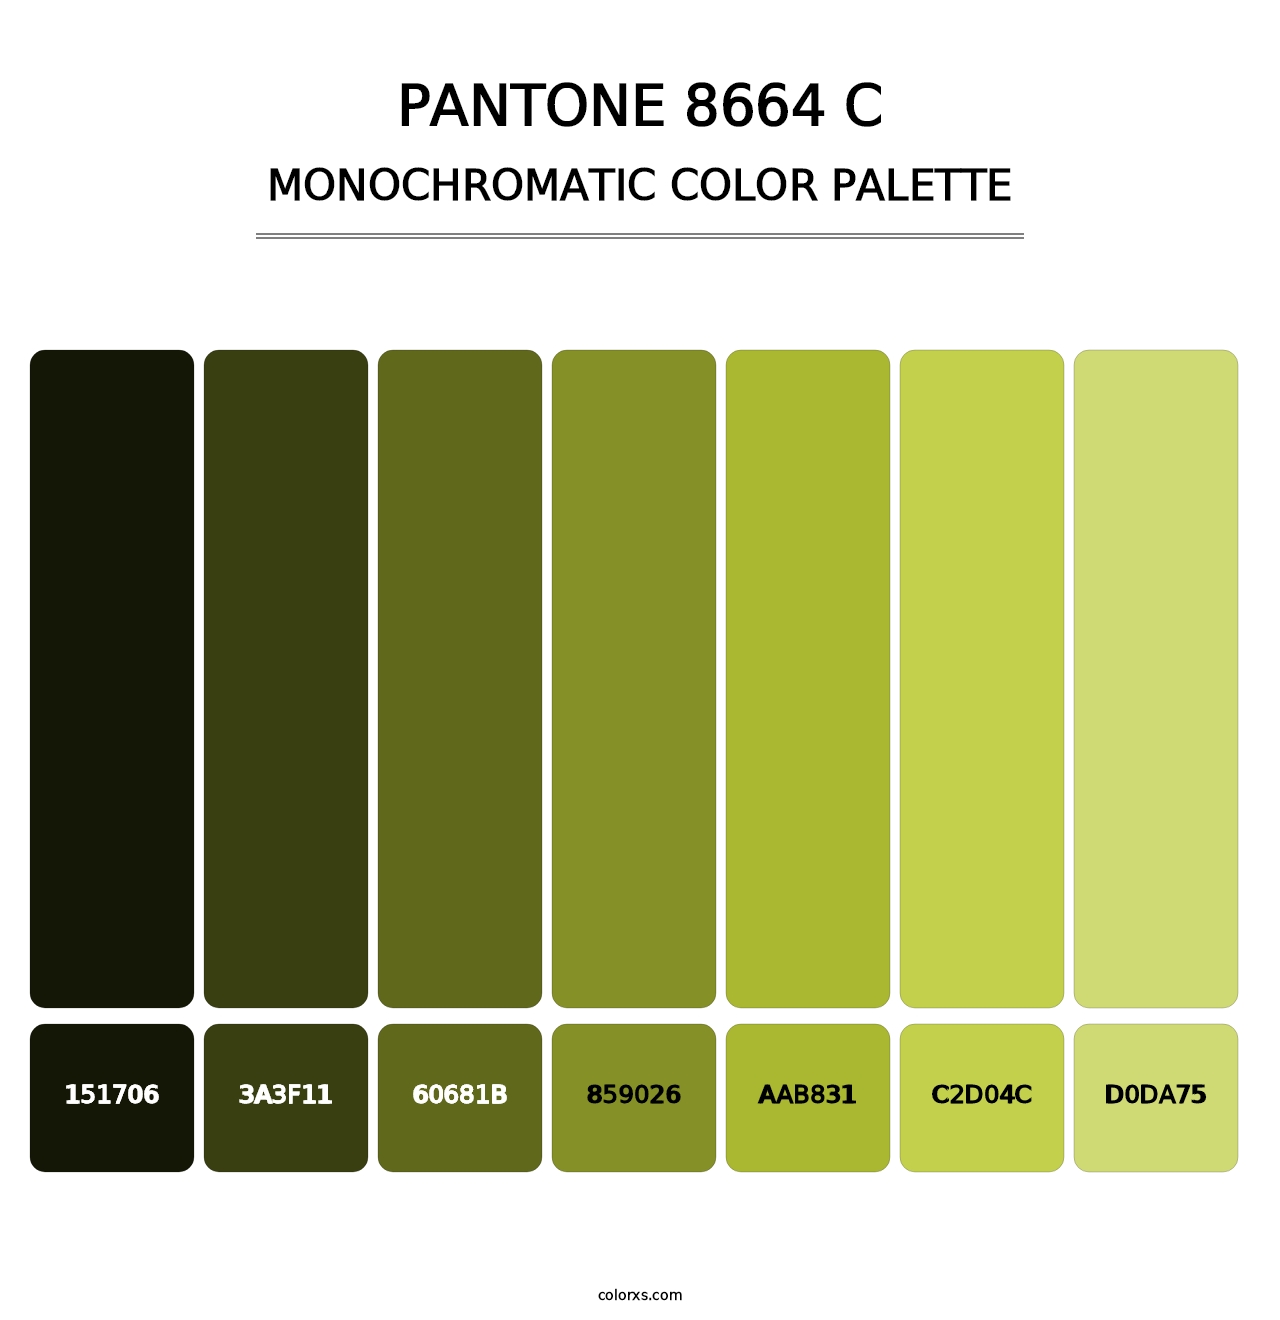 PANTONE 8664 C - Monochromatic Color Palette